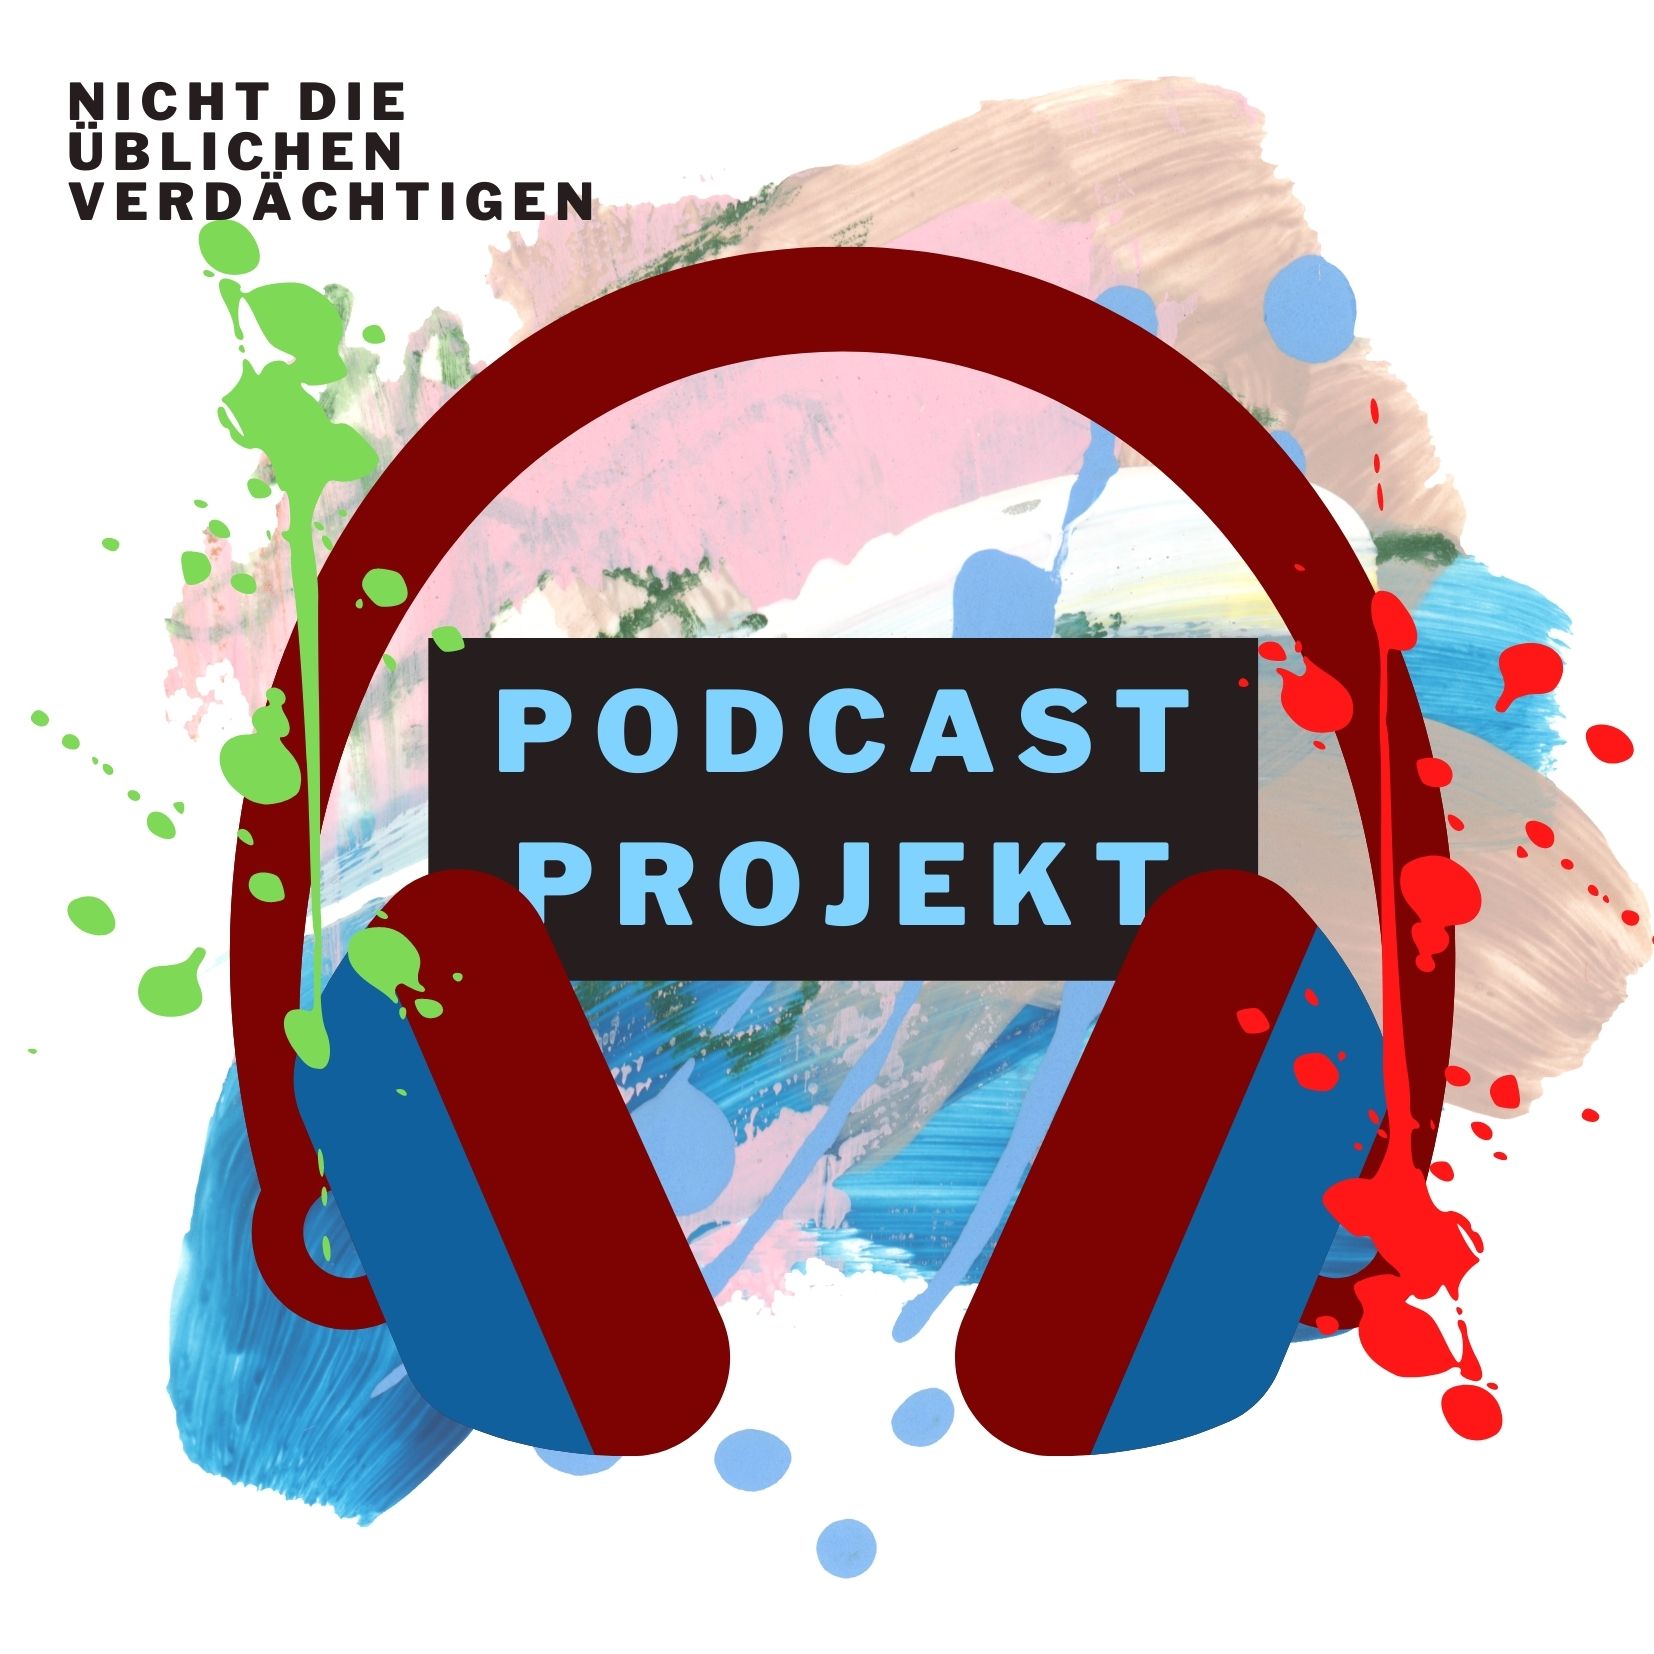 Podcast-Projekt: Nicht die üblichen Verdächtigen